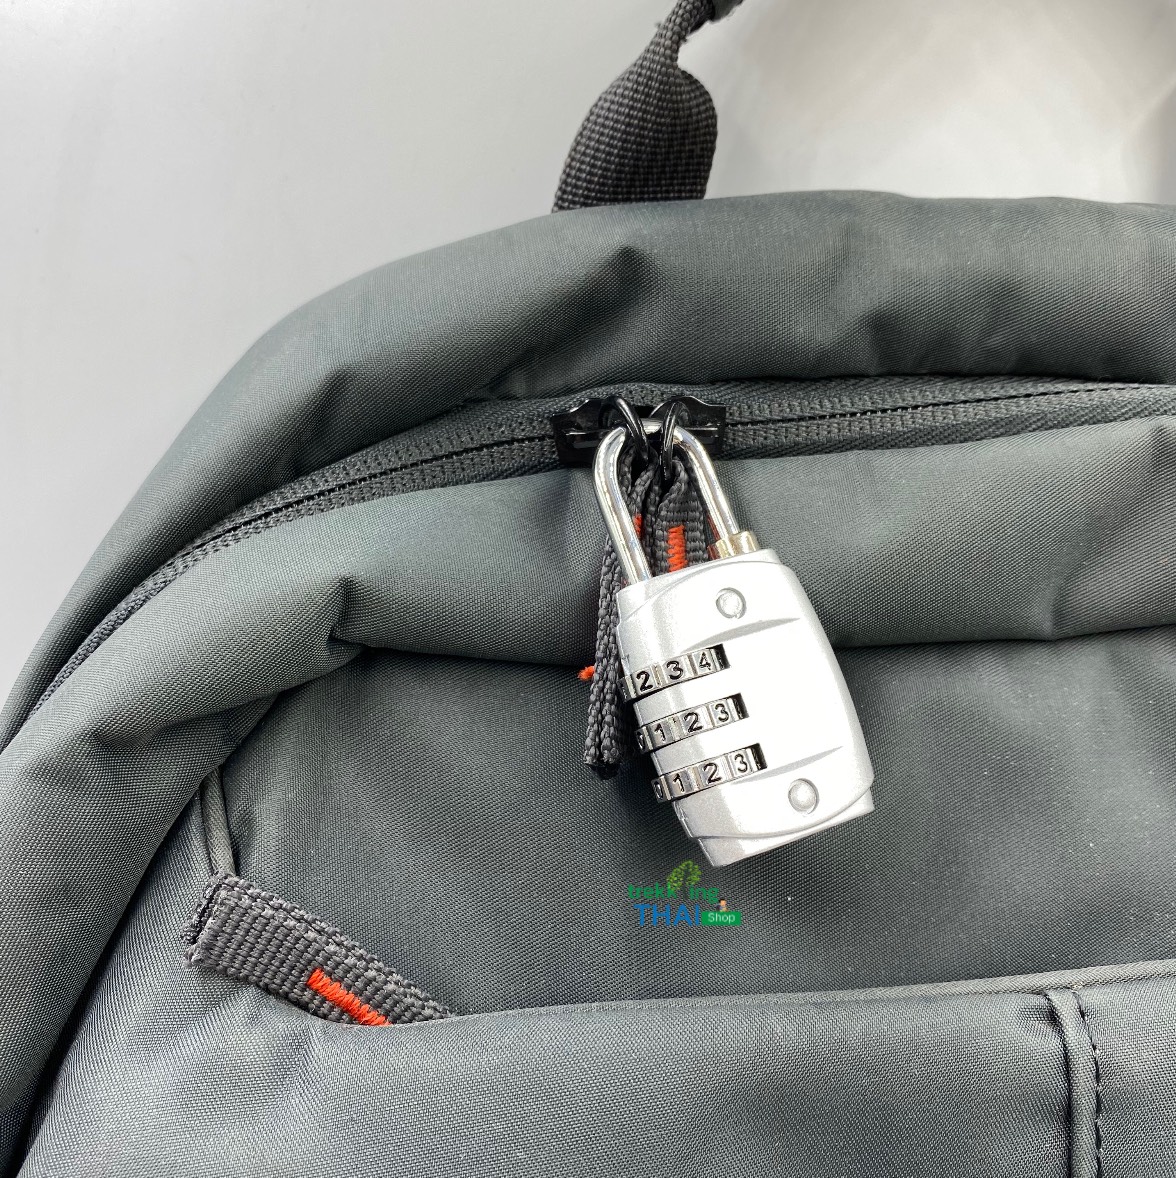 กุญแจรหัส 3 Lock กุญแจล็อคกระเป๋า กุญแจแบบตั้งรหัส สำหรับพกพา มีขนาดเล็ก ง่ายต่อการใช้งาน สามารถตั้งชุดรหัสเองได้ตามที่ใจต้องการ TKT Adventure shop